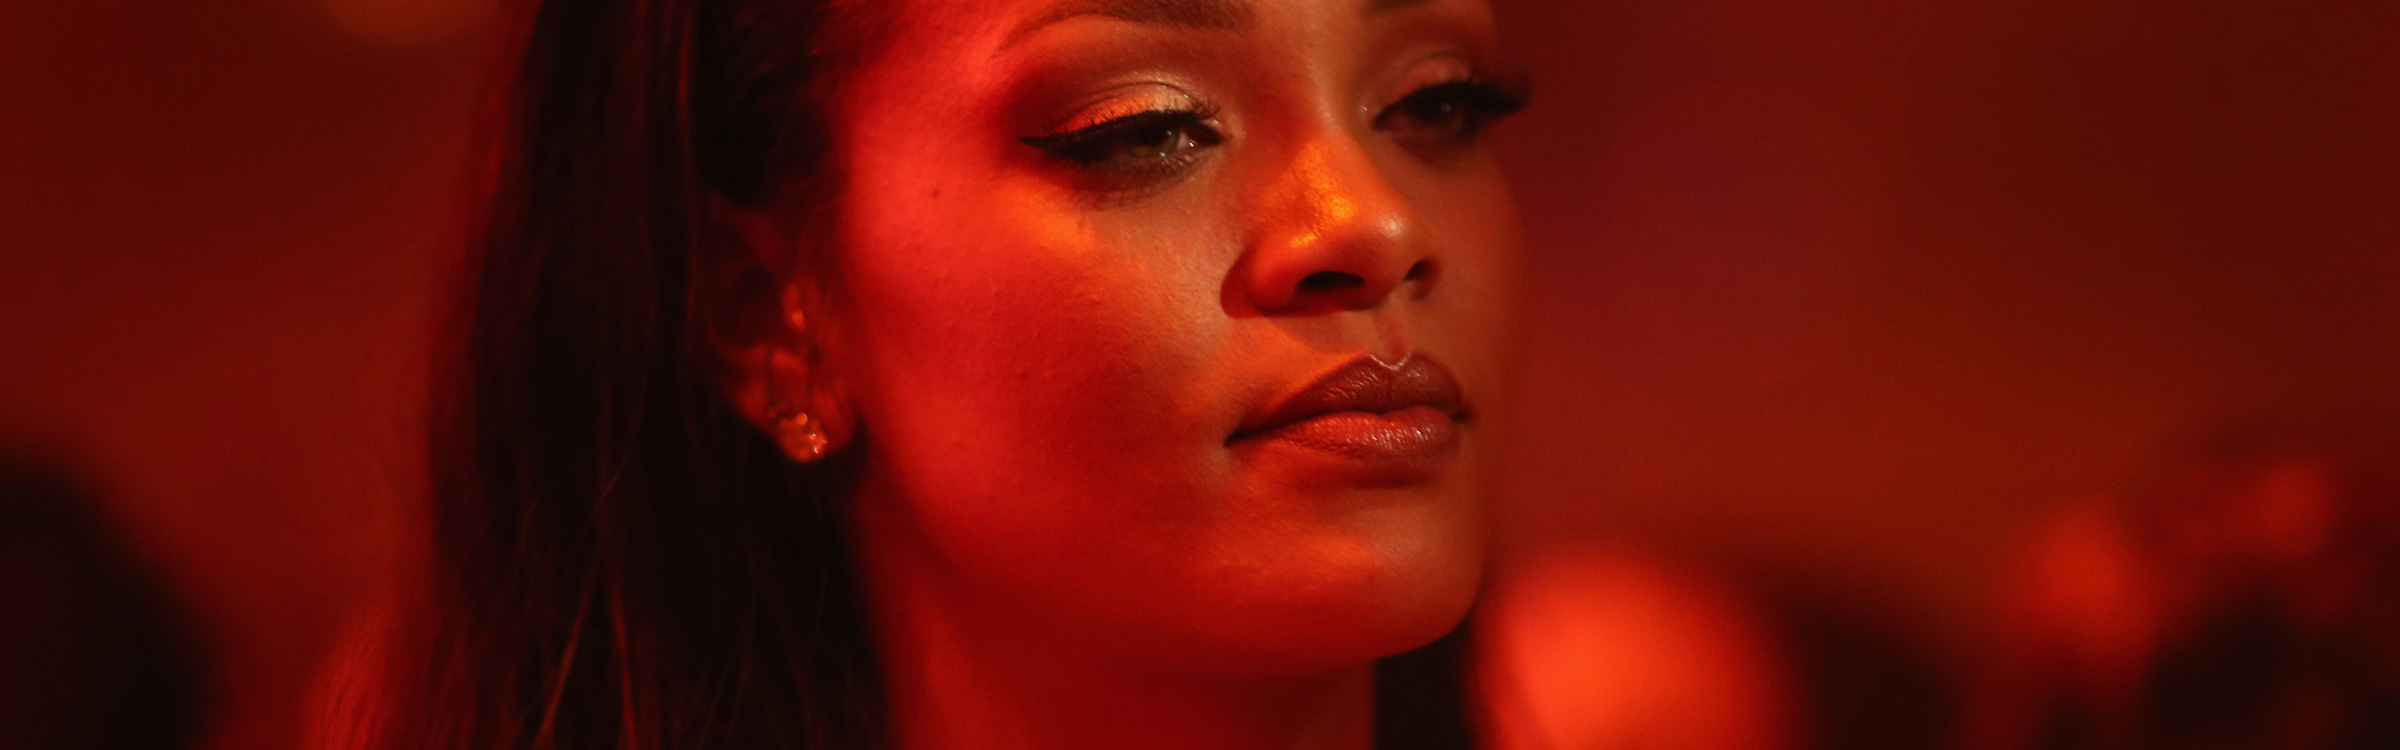 Rihanna header